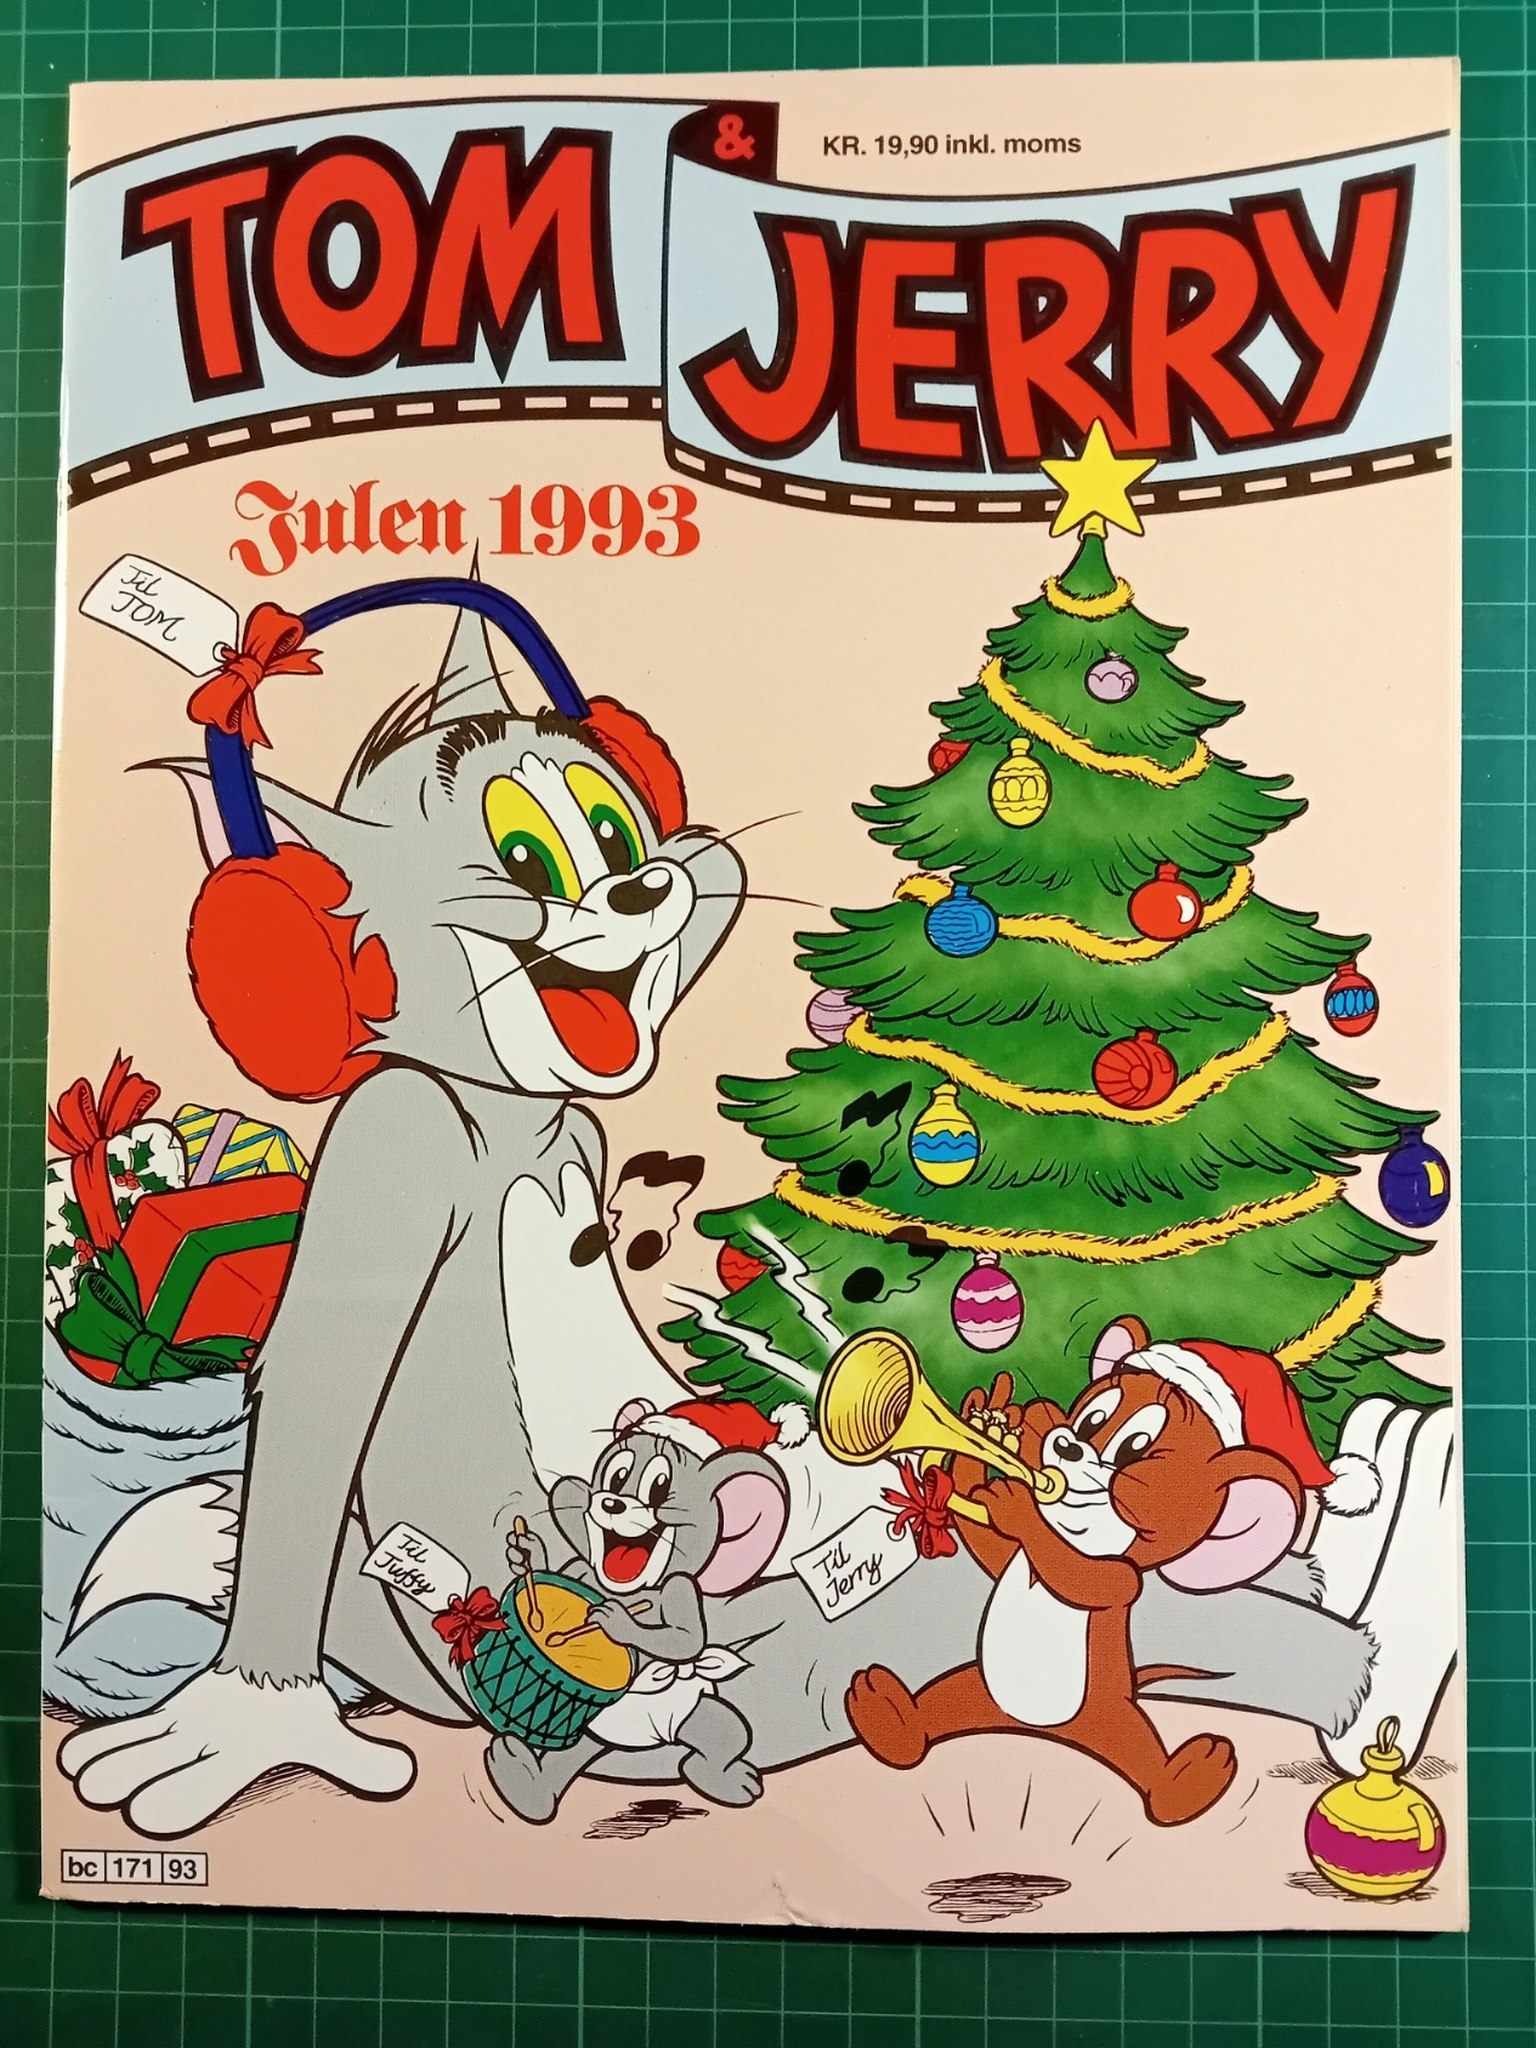 Tom & Jerry julen 1993